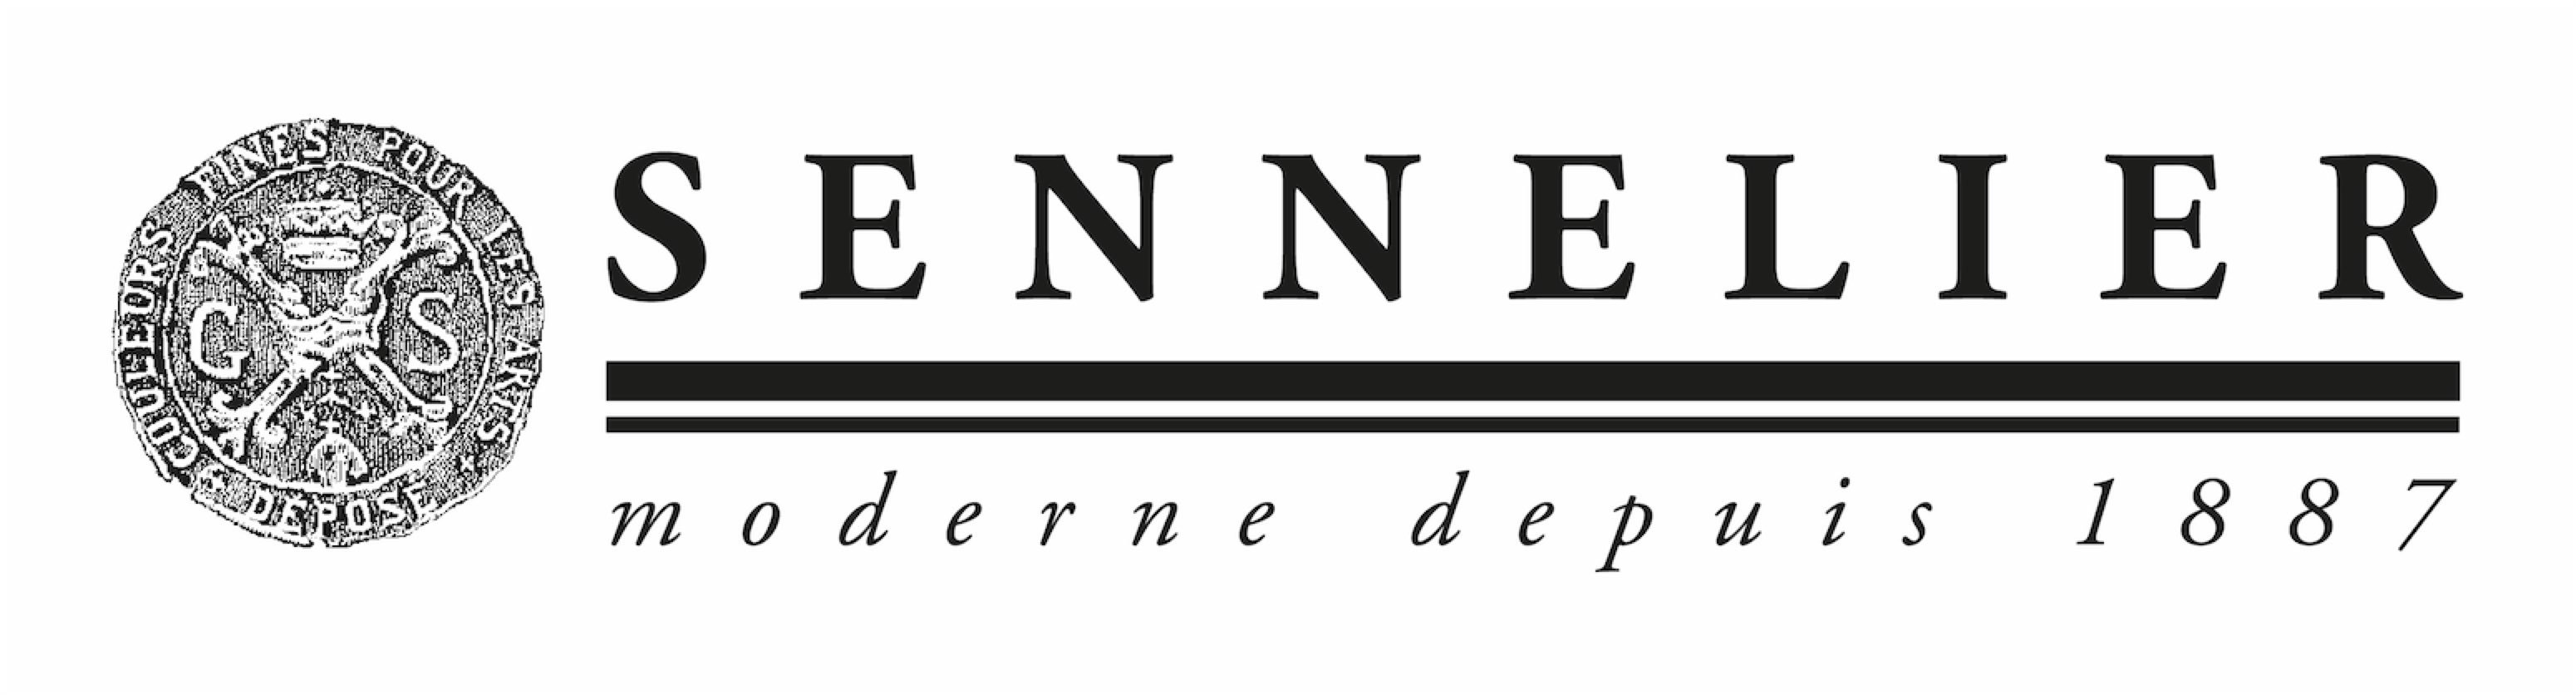 Sennelier logo